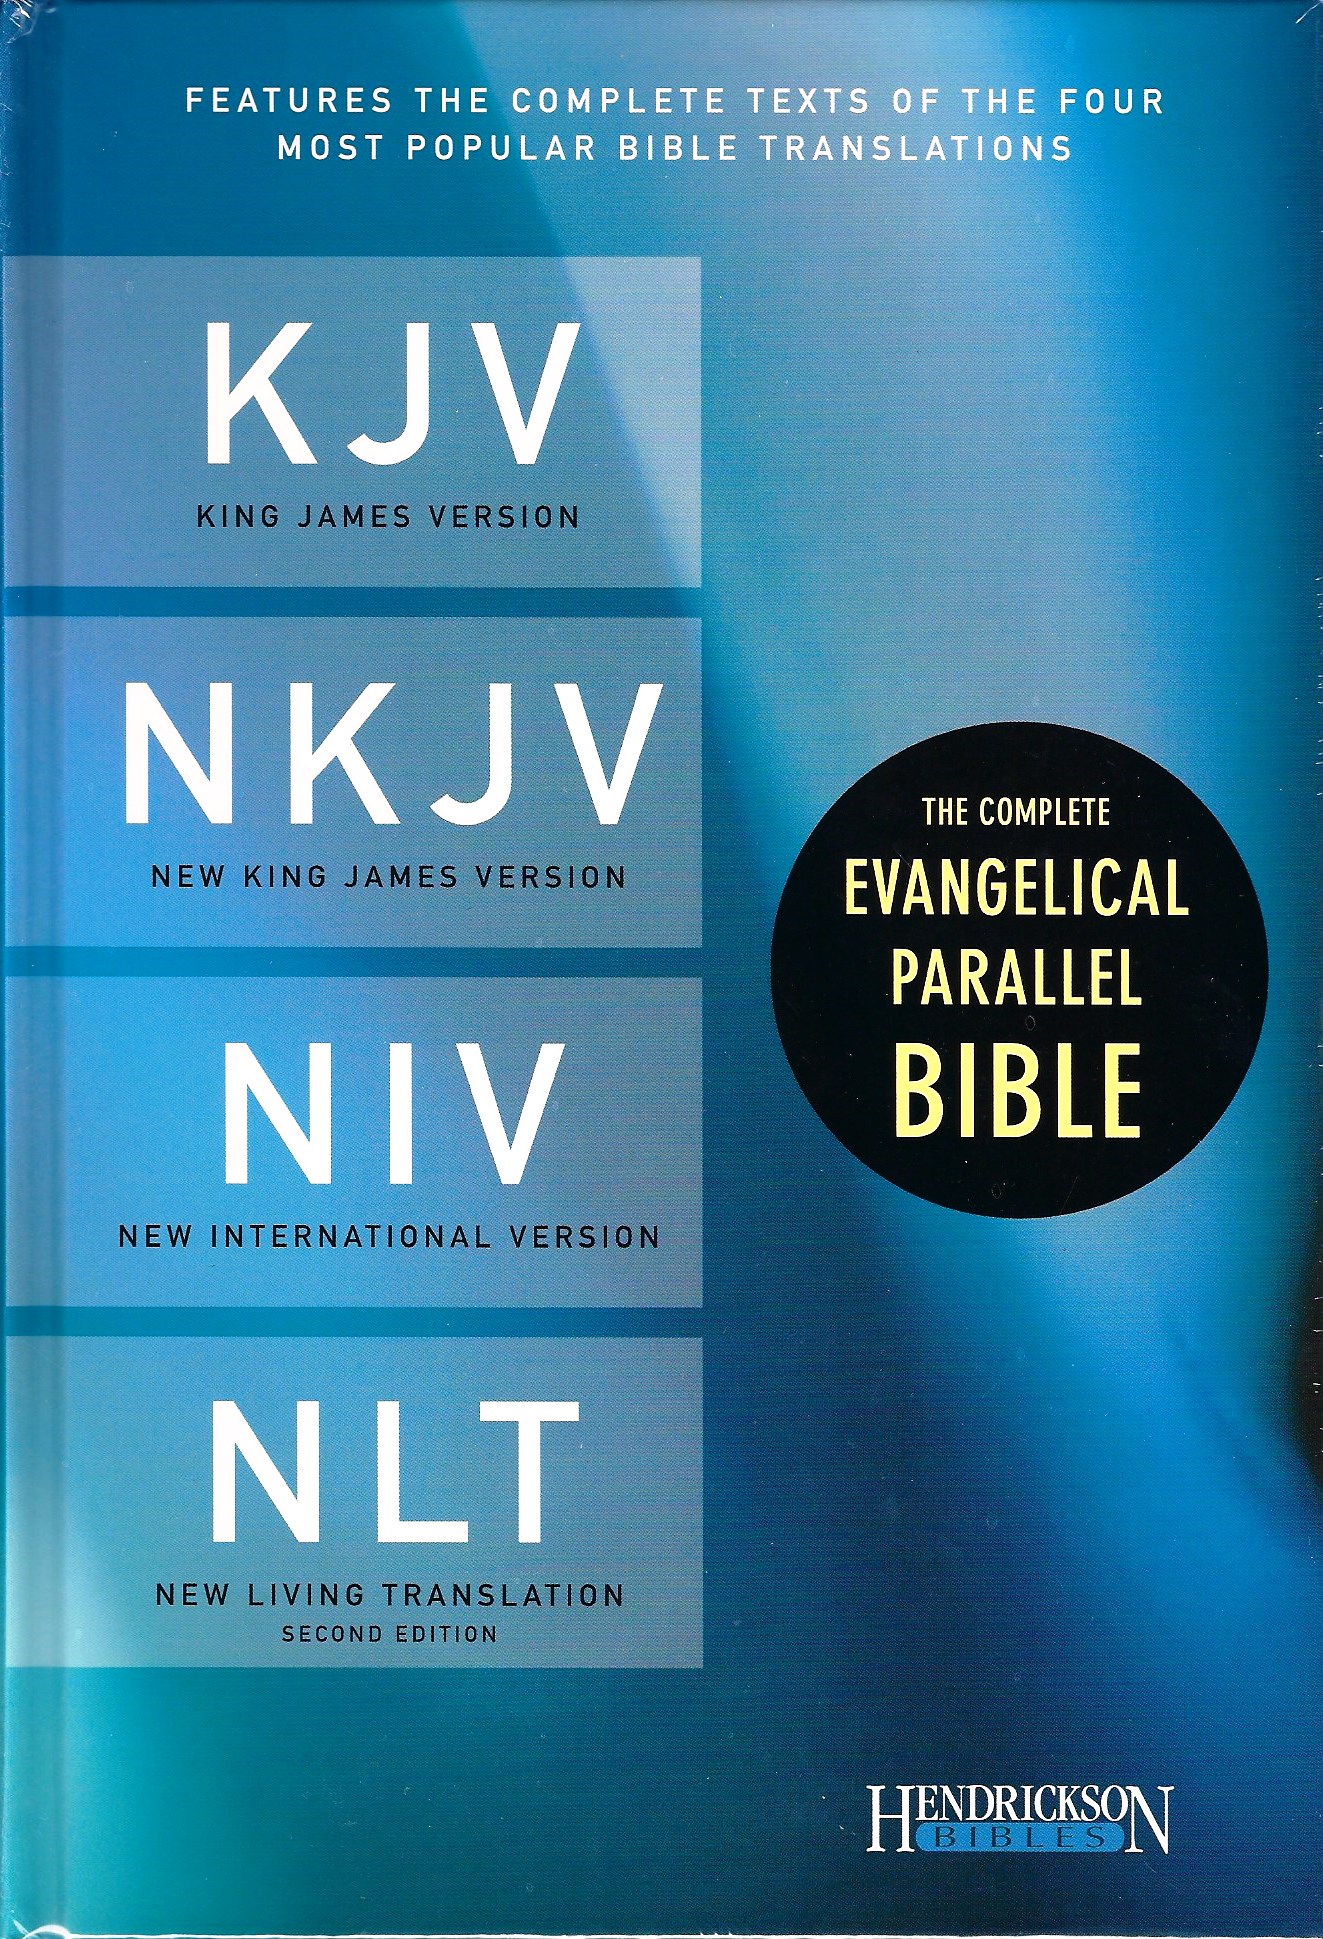 KJV/NKJV/NIV/NLT PARALLEL BIBLE Hardcover